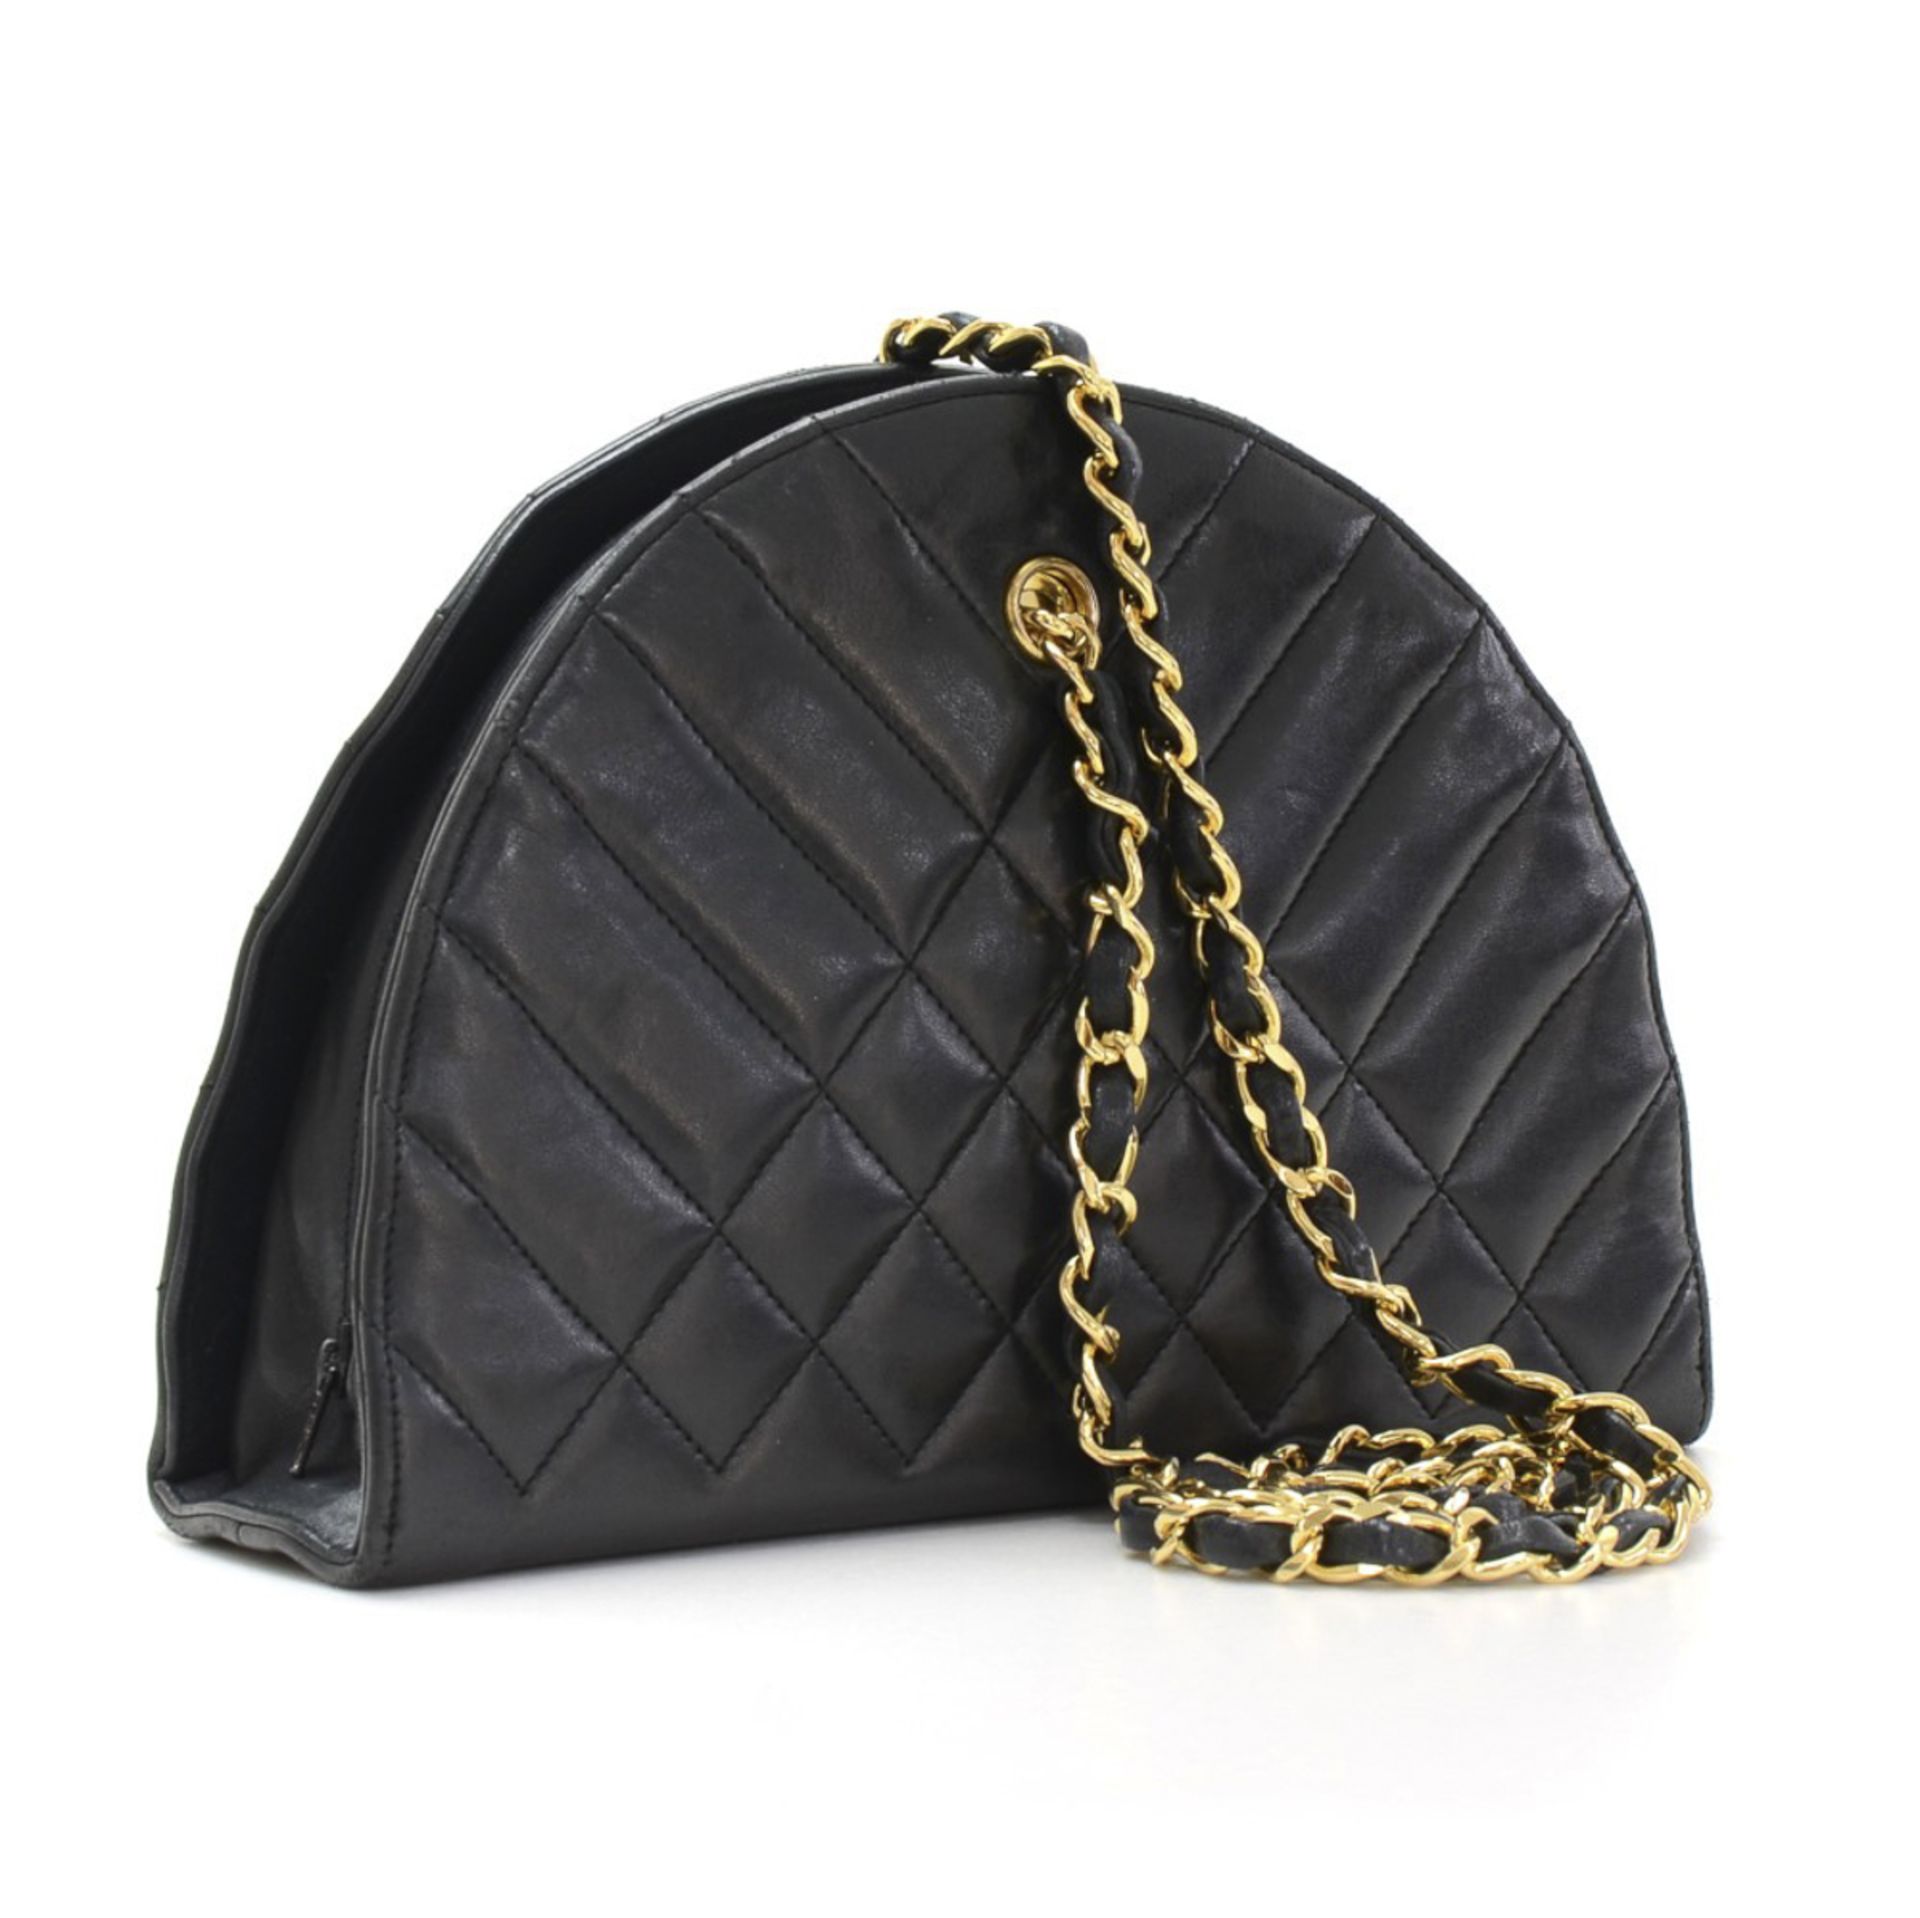 Chanel, Timeless Shoulder Bag - Image 5 of 11